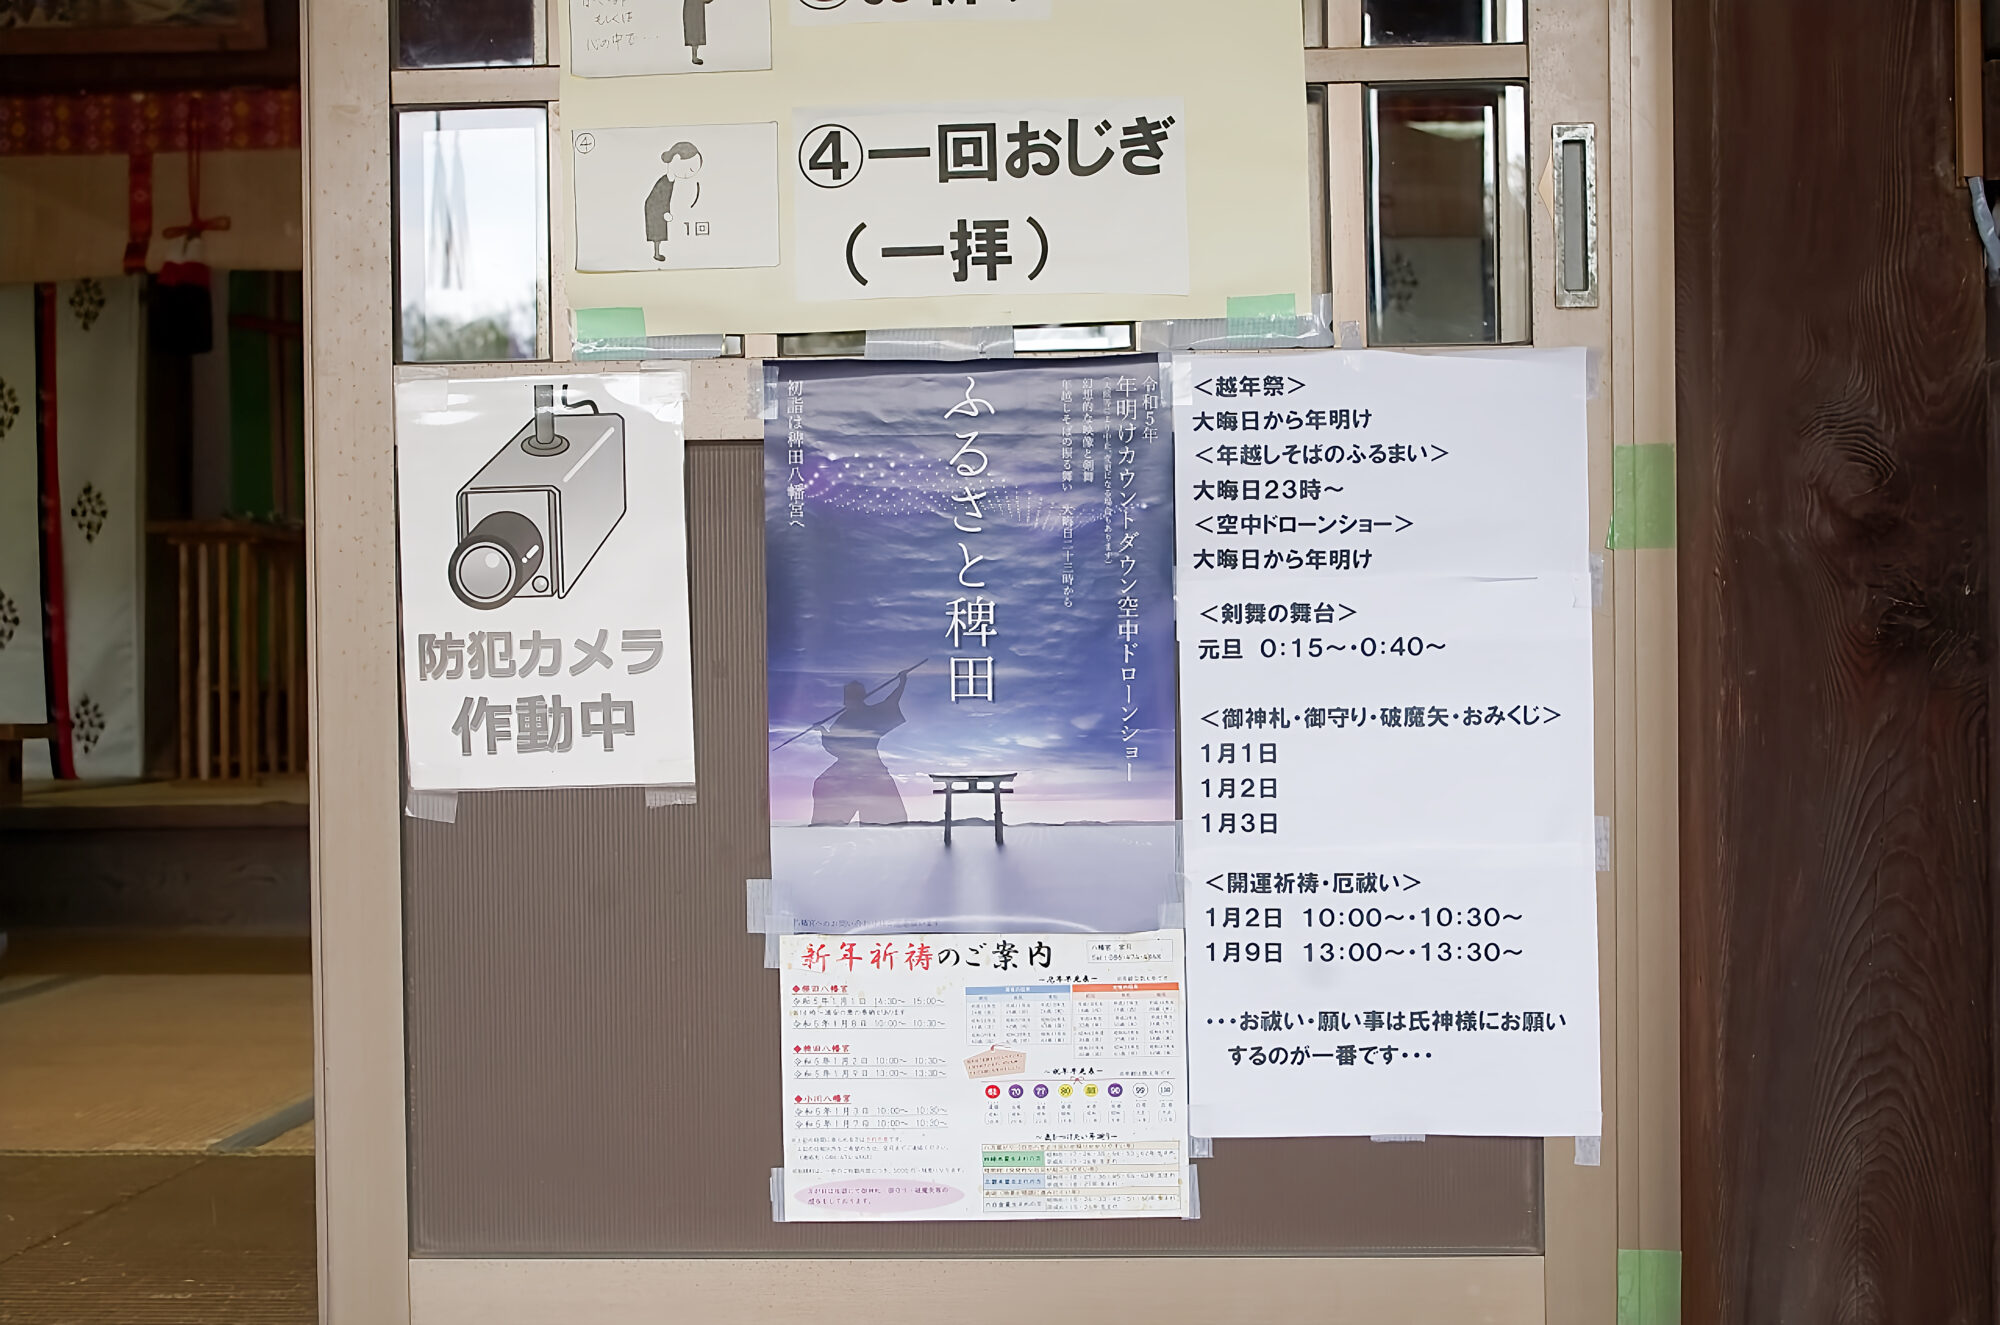 稗田地区のみに貼られた｢ふるさと稗田｣を告知するポスター